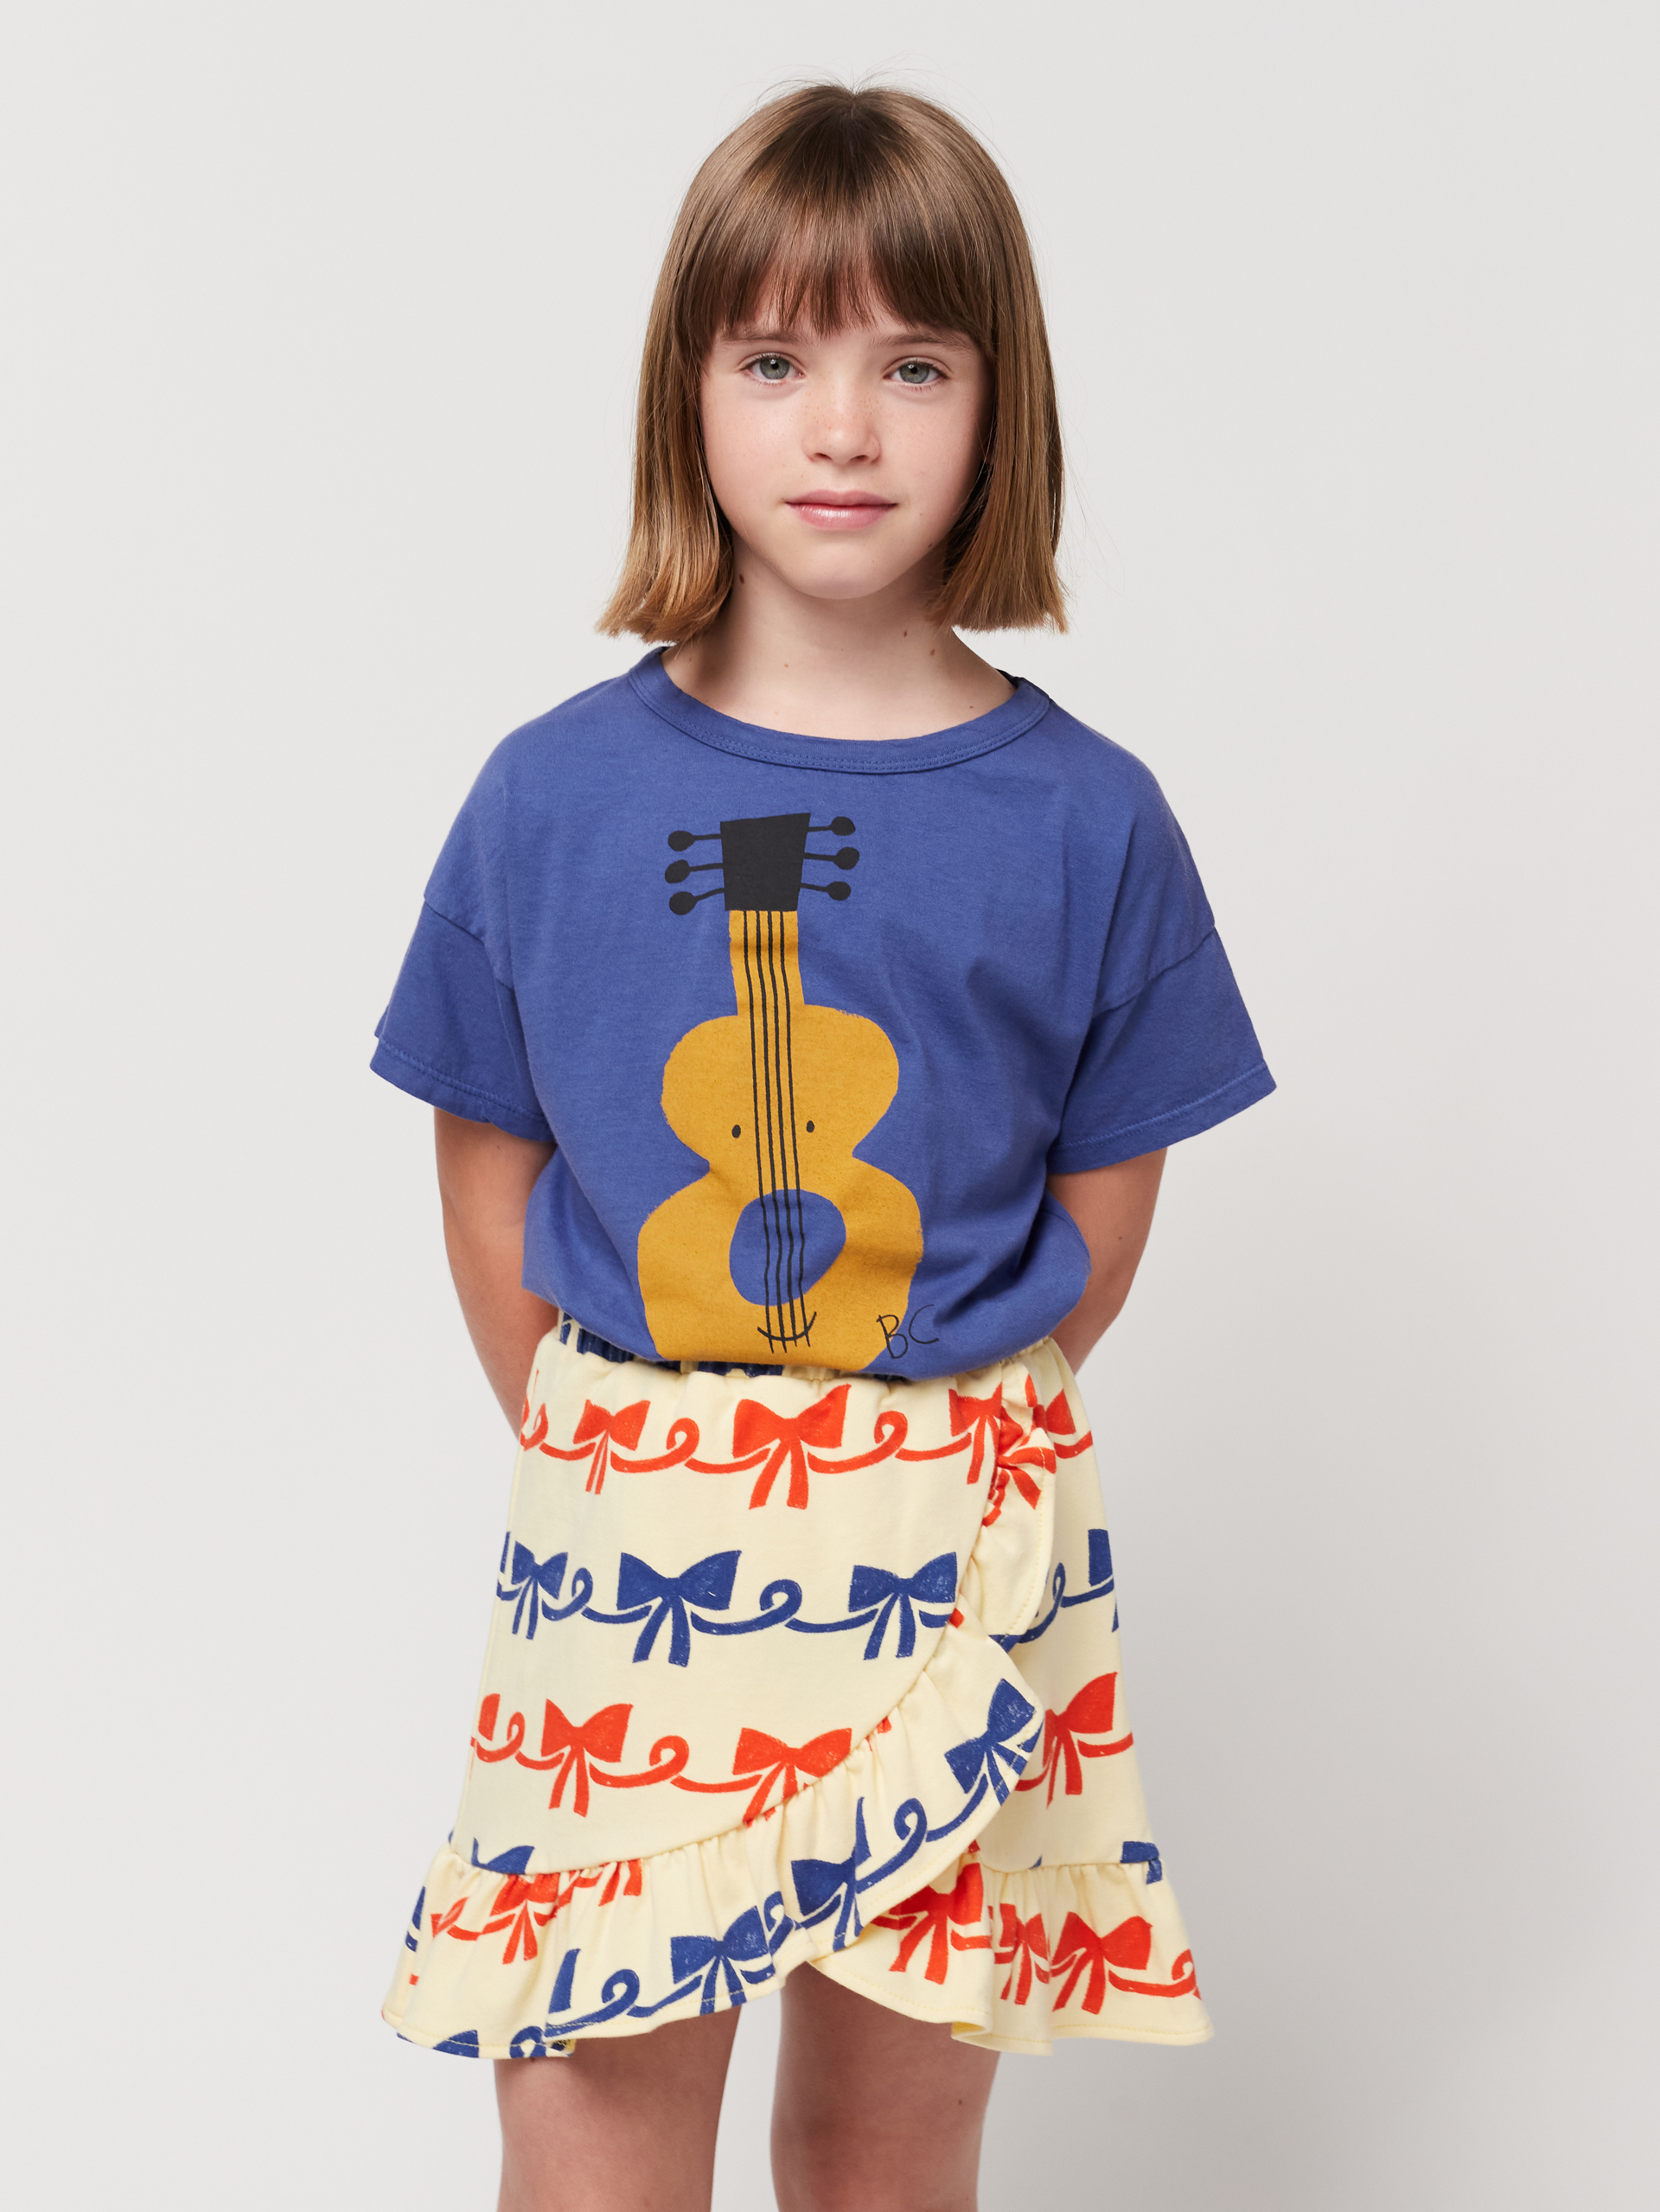 T-shirt Acoustic Guitar 2